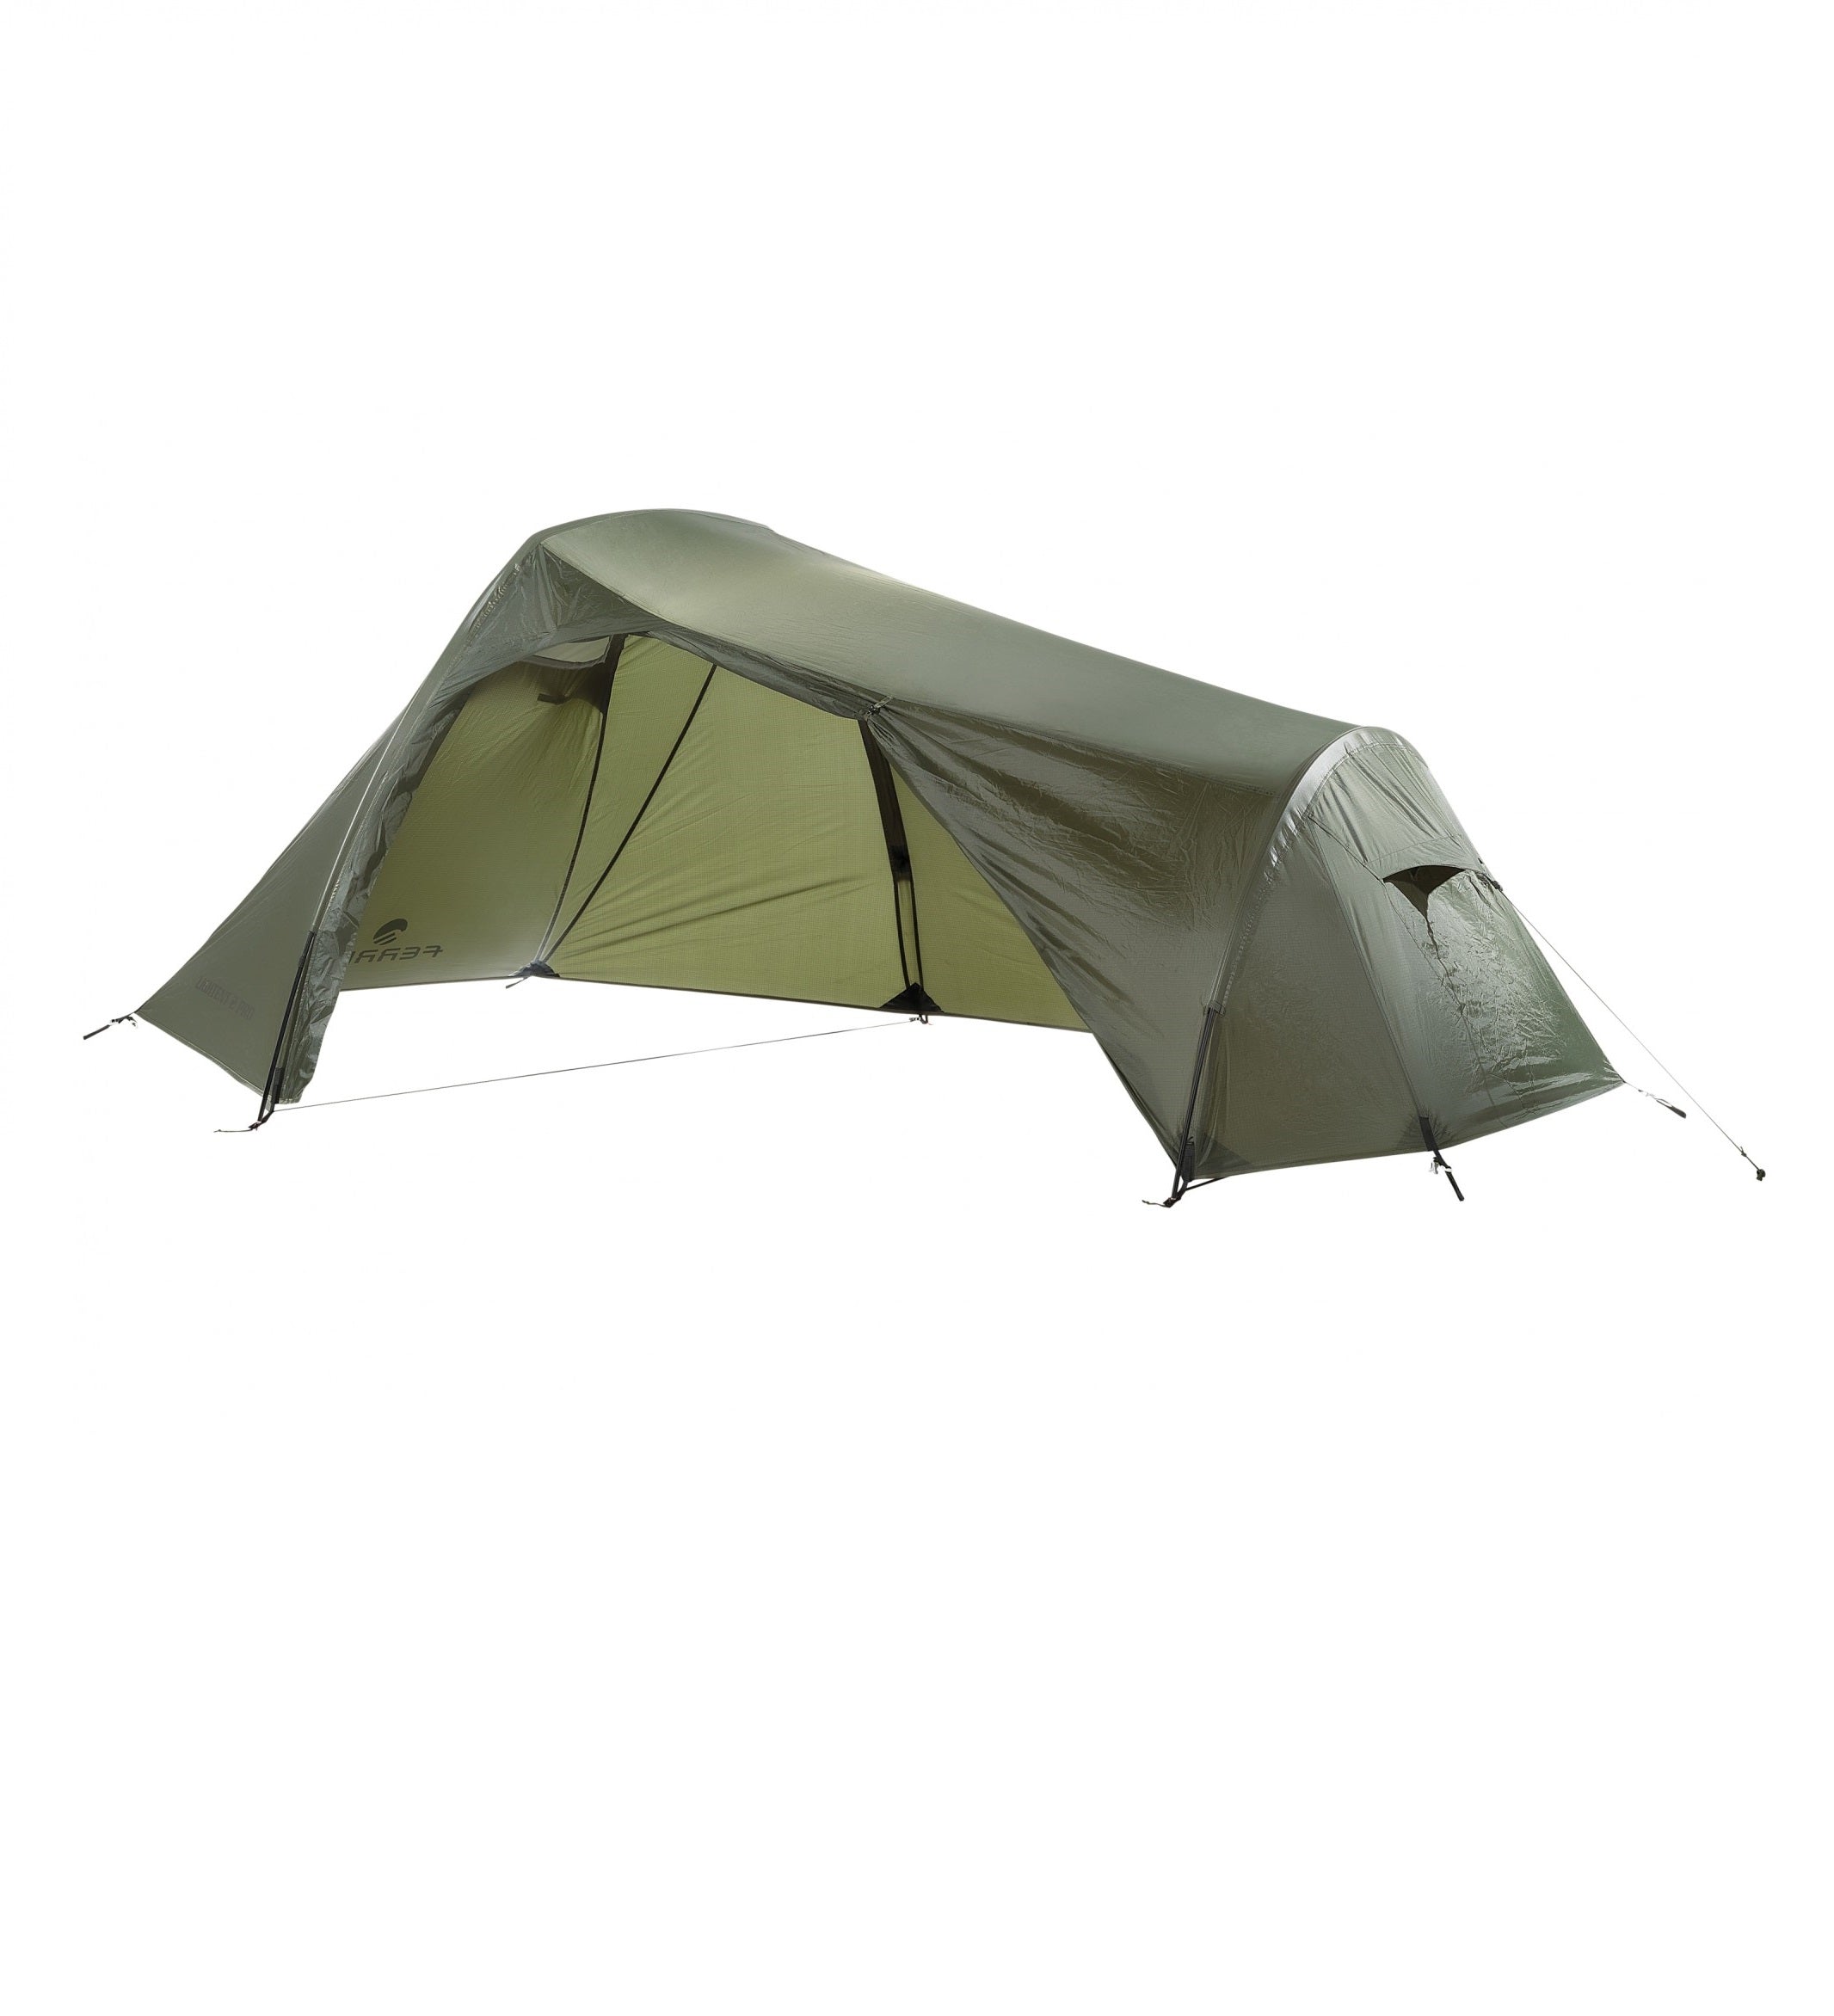 Tente Lightent 2Pro montée en mode abri, sans la sous-tente